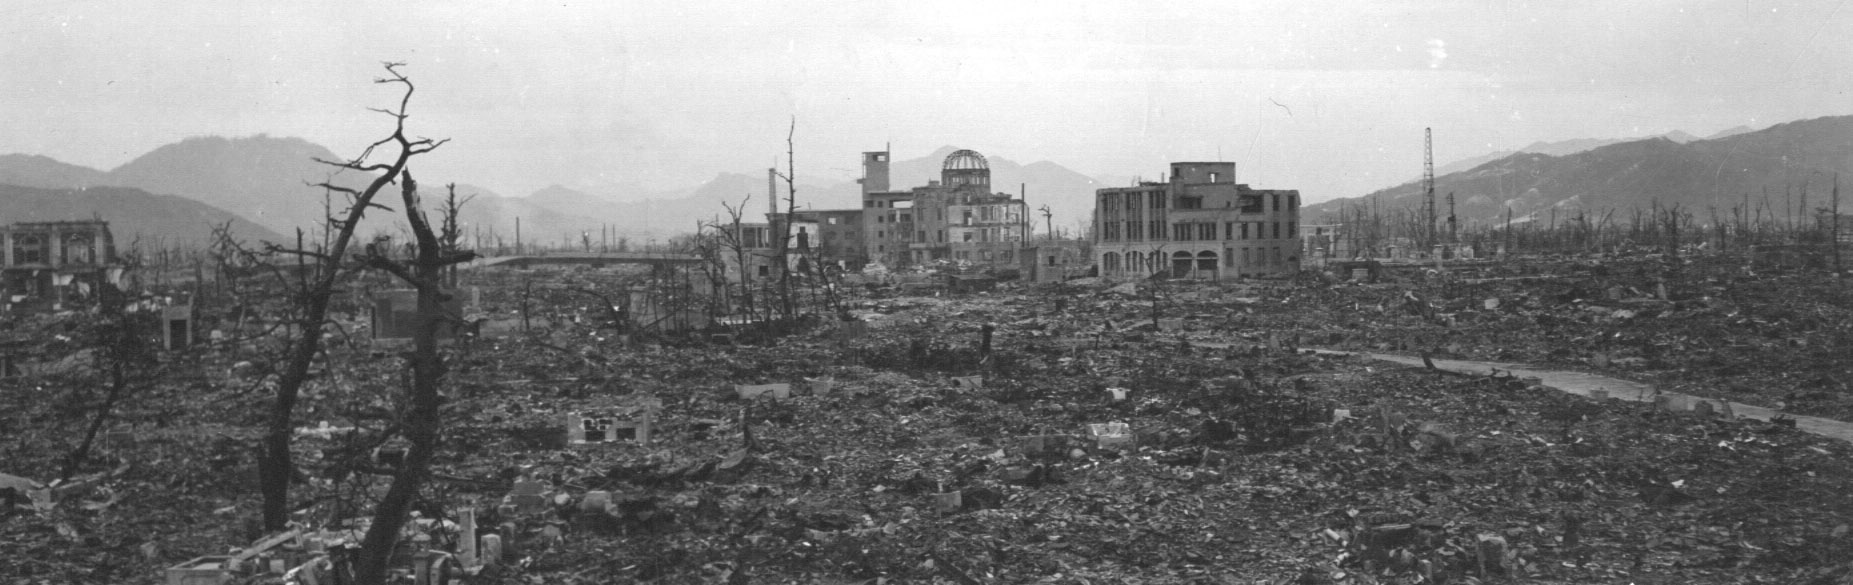 Photograph of Hiroshima after Atomic Bomb, 1945